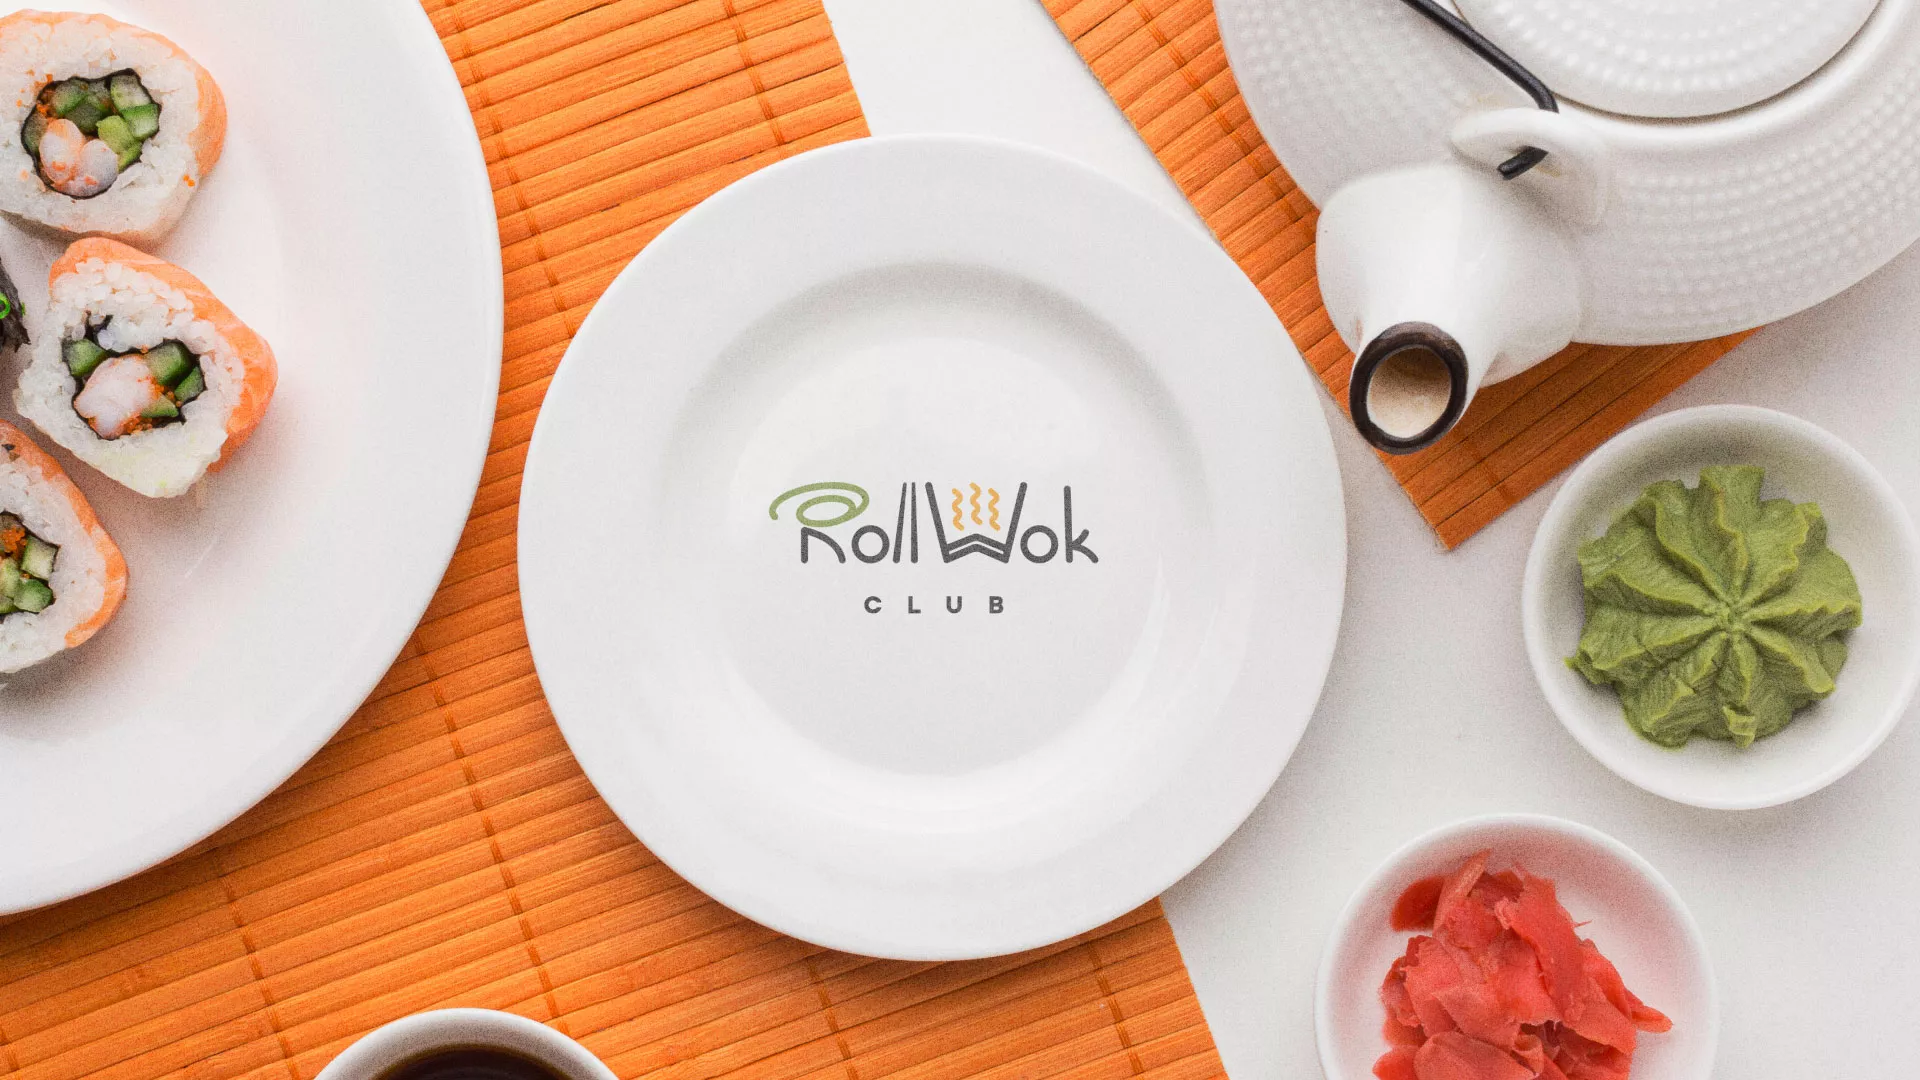 Разработка логотипа и фирменного стиля суши-бара «Roll Wok Club» в Железногорске